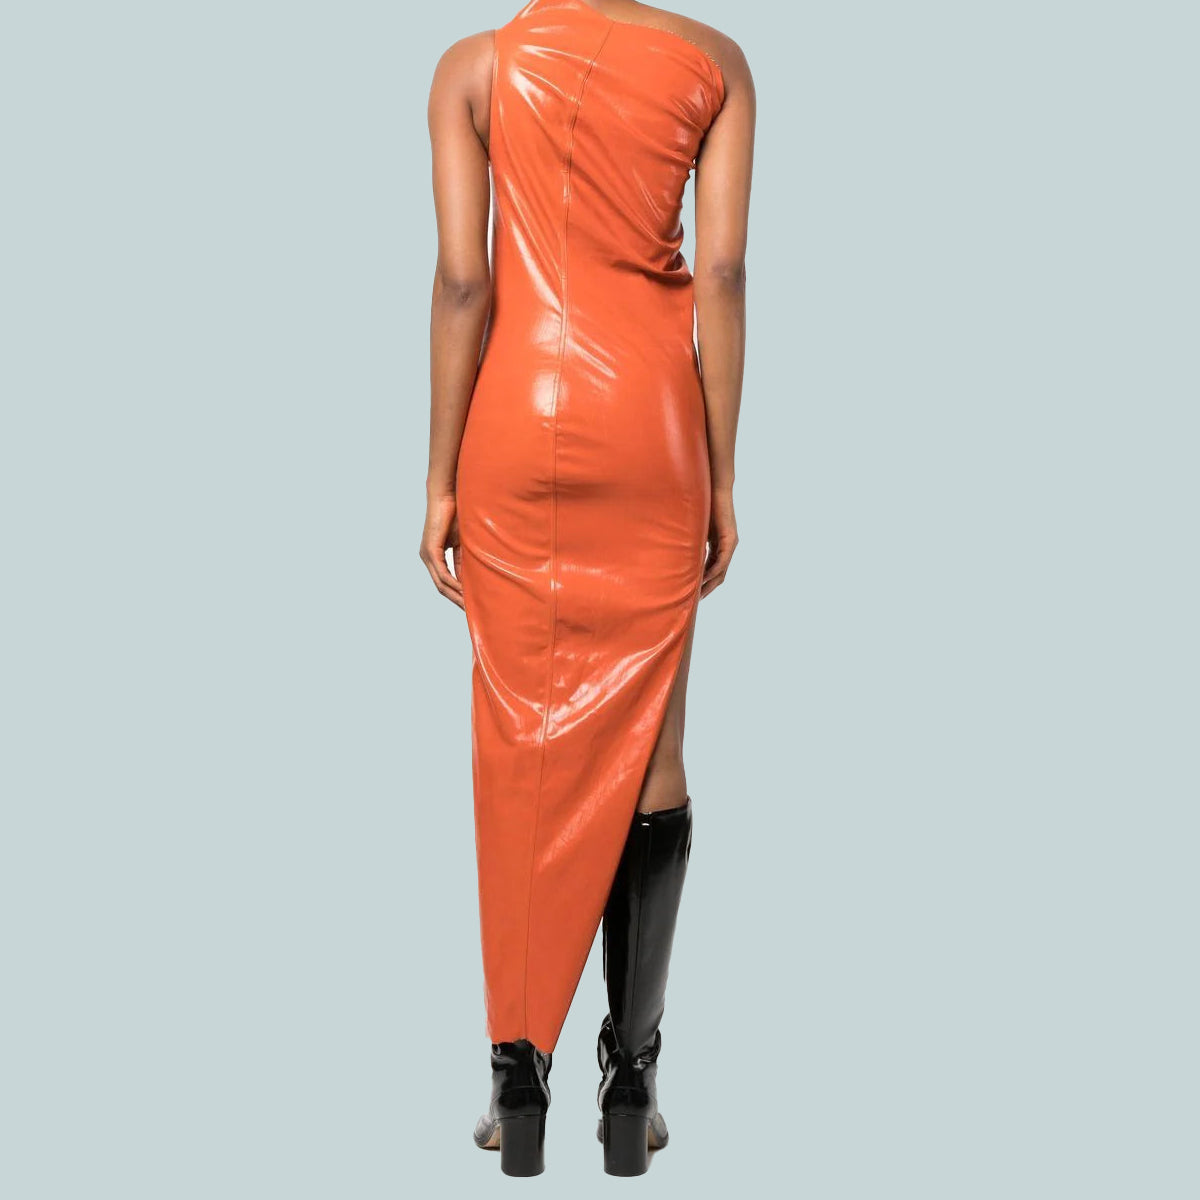 Athena gown orange